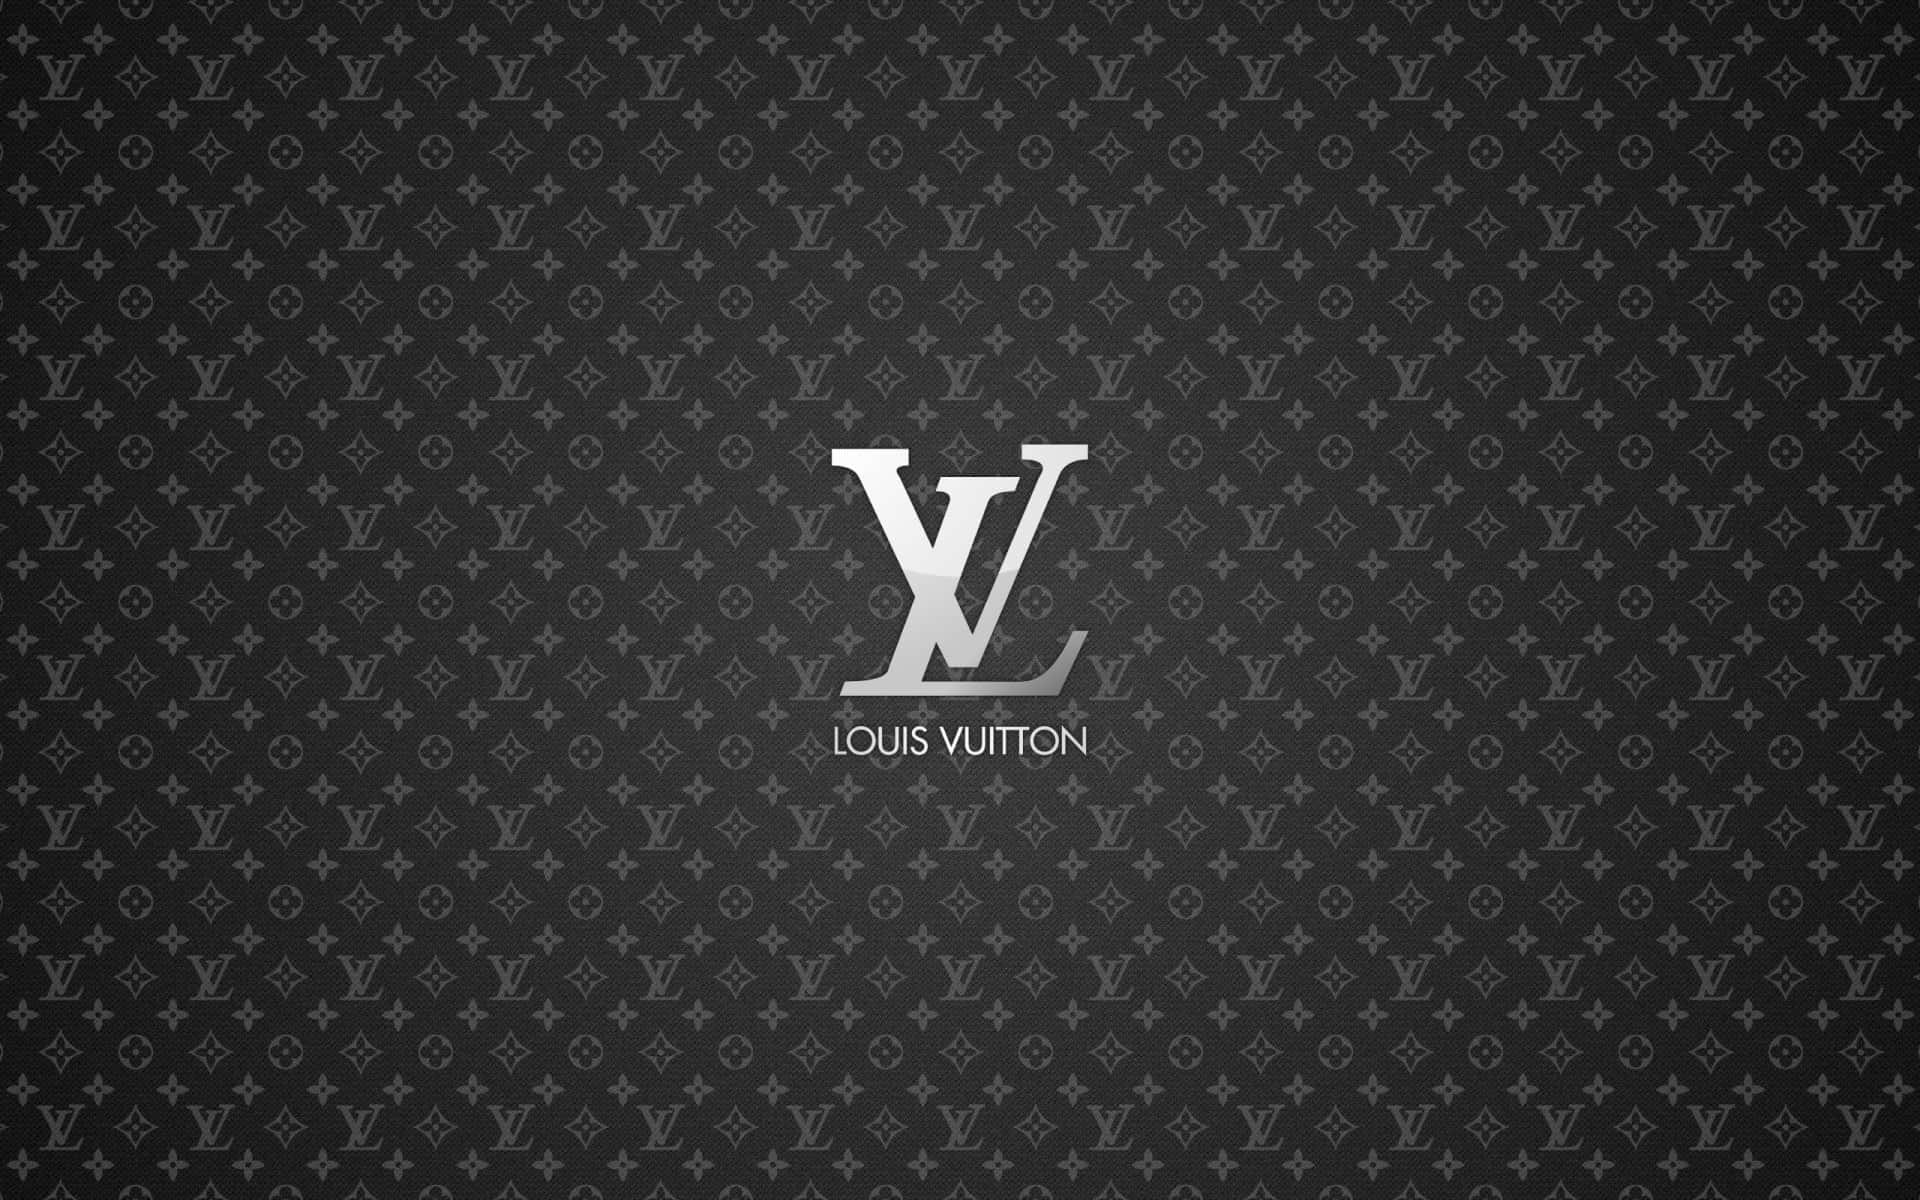 Varfärgglad Med Louis Vuitton 4k Som Dator- Eller Mobilbakgrund. Wallpaper